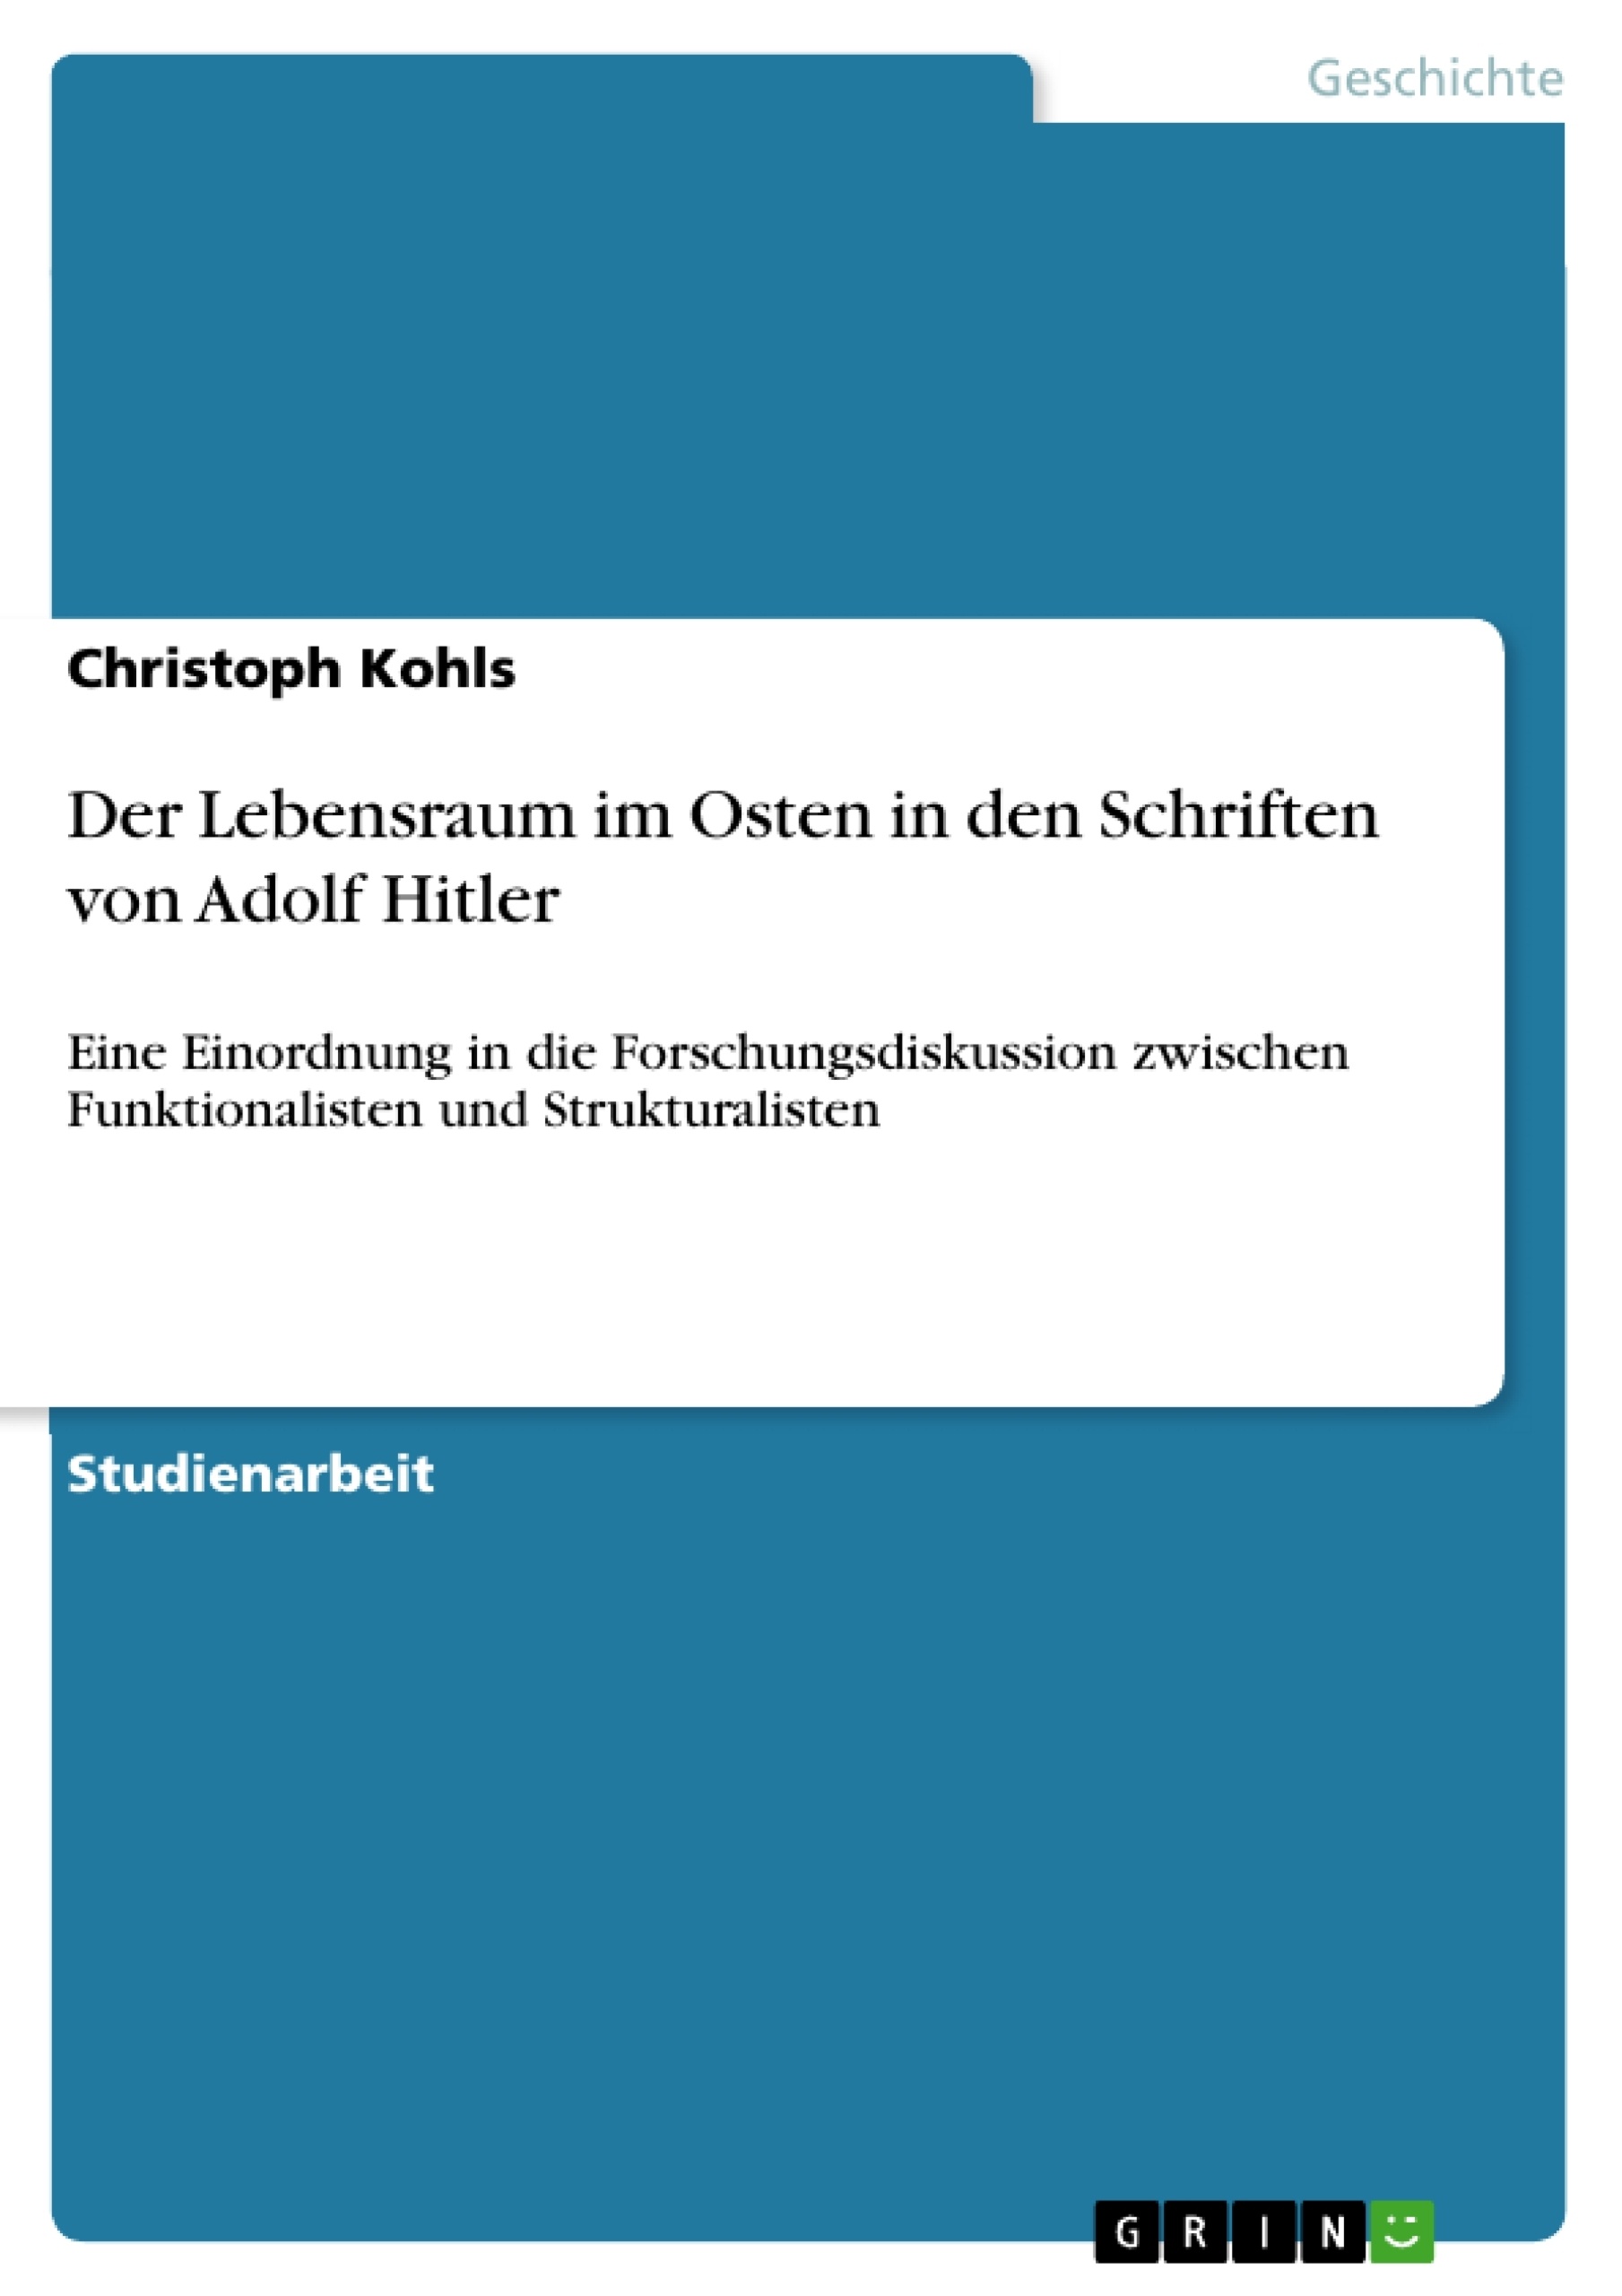 Título: Der Lebensraum im Osten in den Schriften von Adolf Hitler